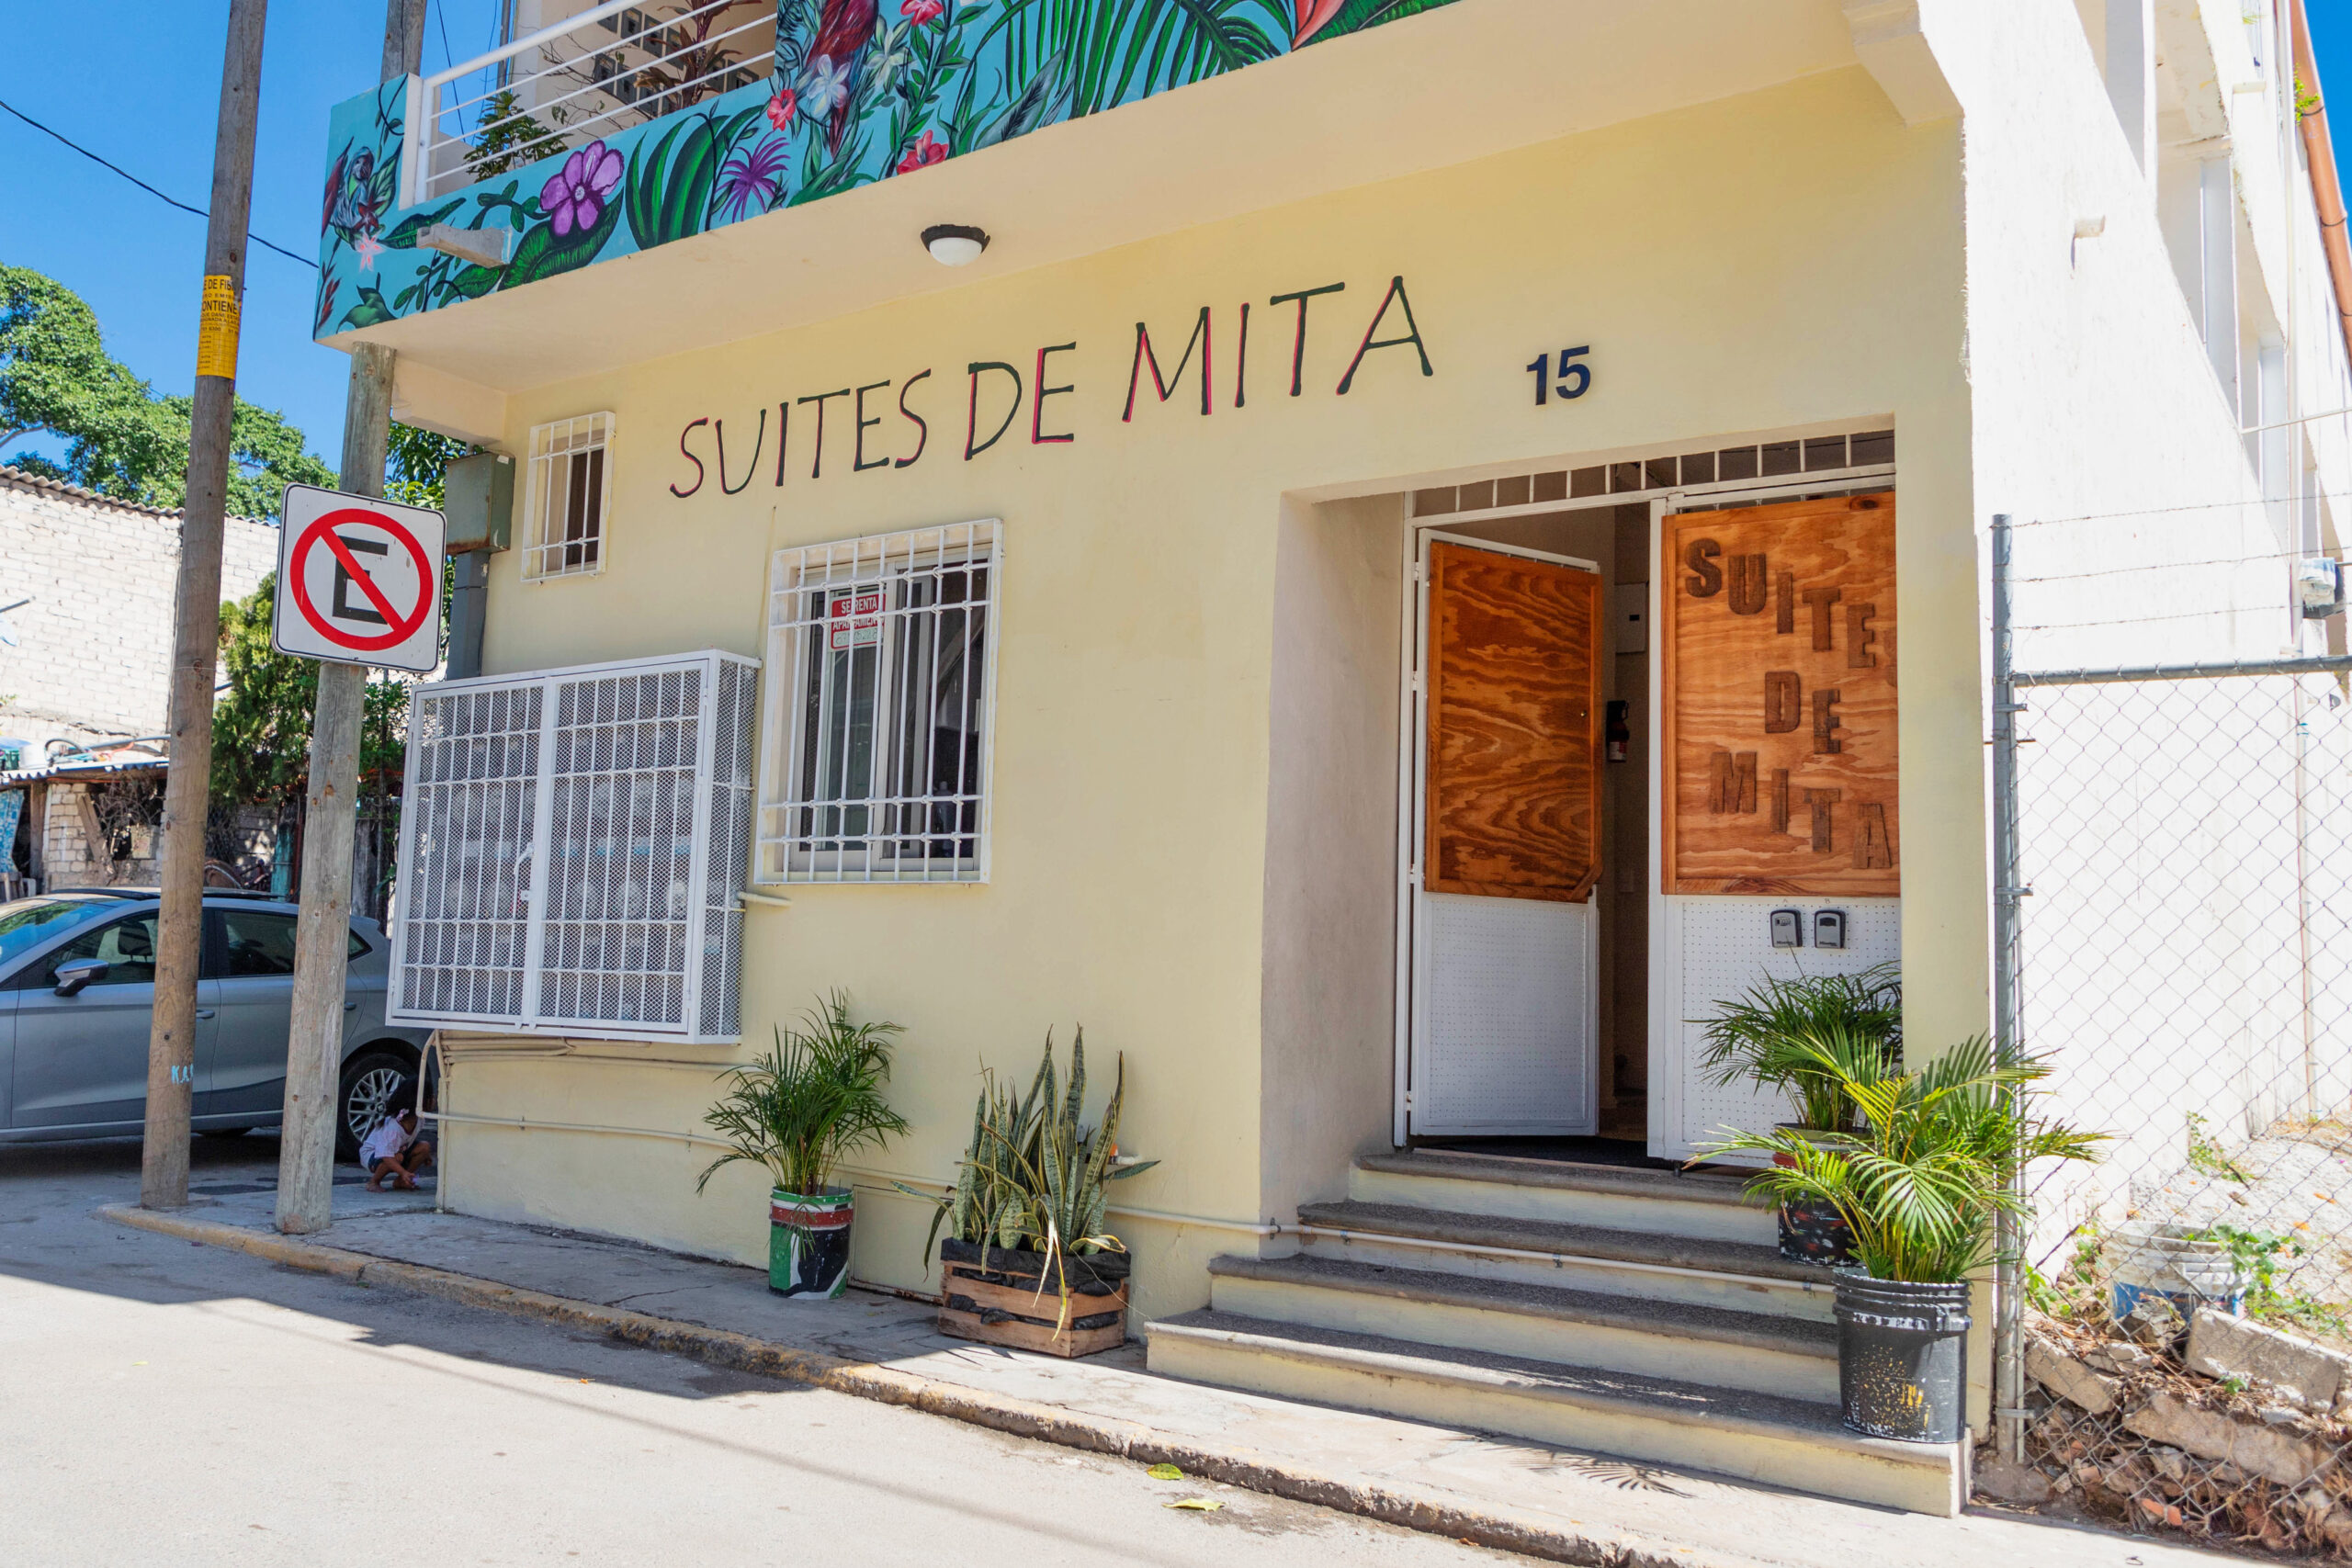 Suites de Mita Punta Mita Boutique Hotel for Sale by Owner